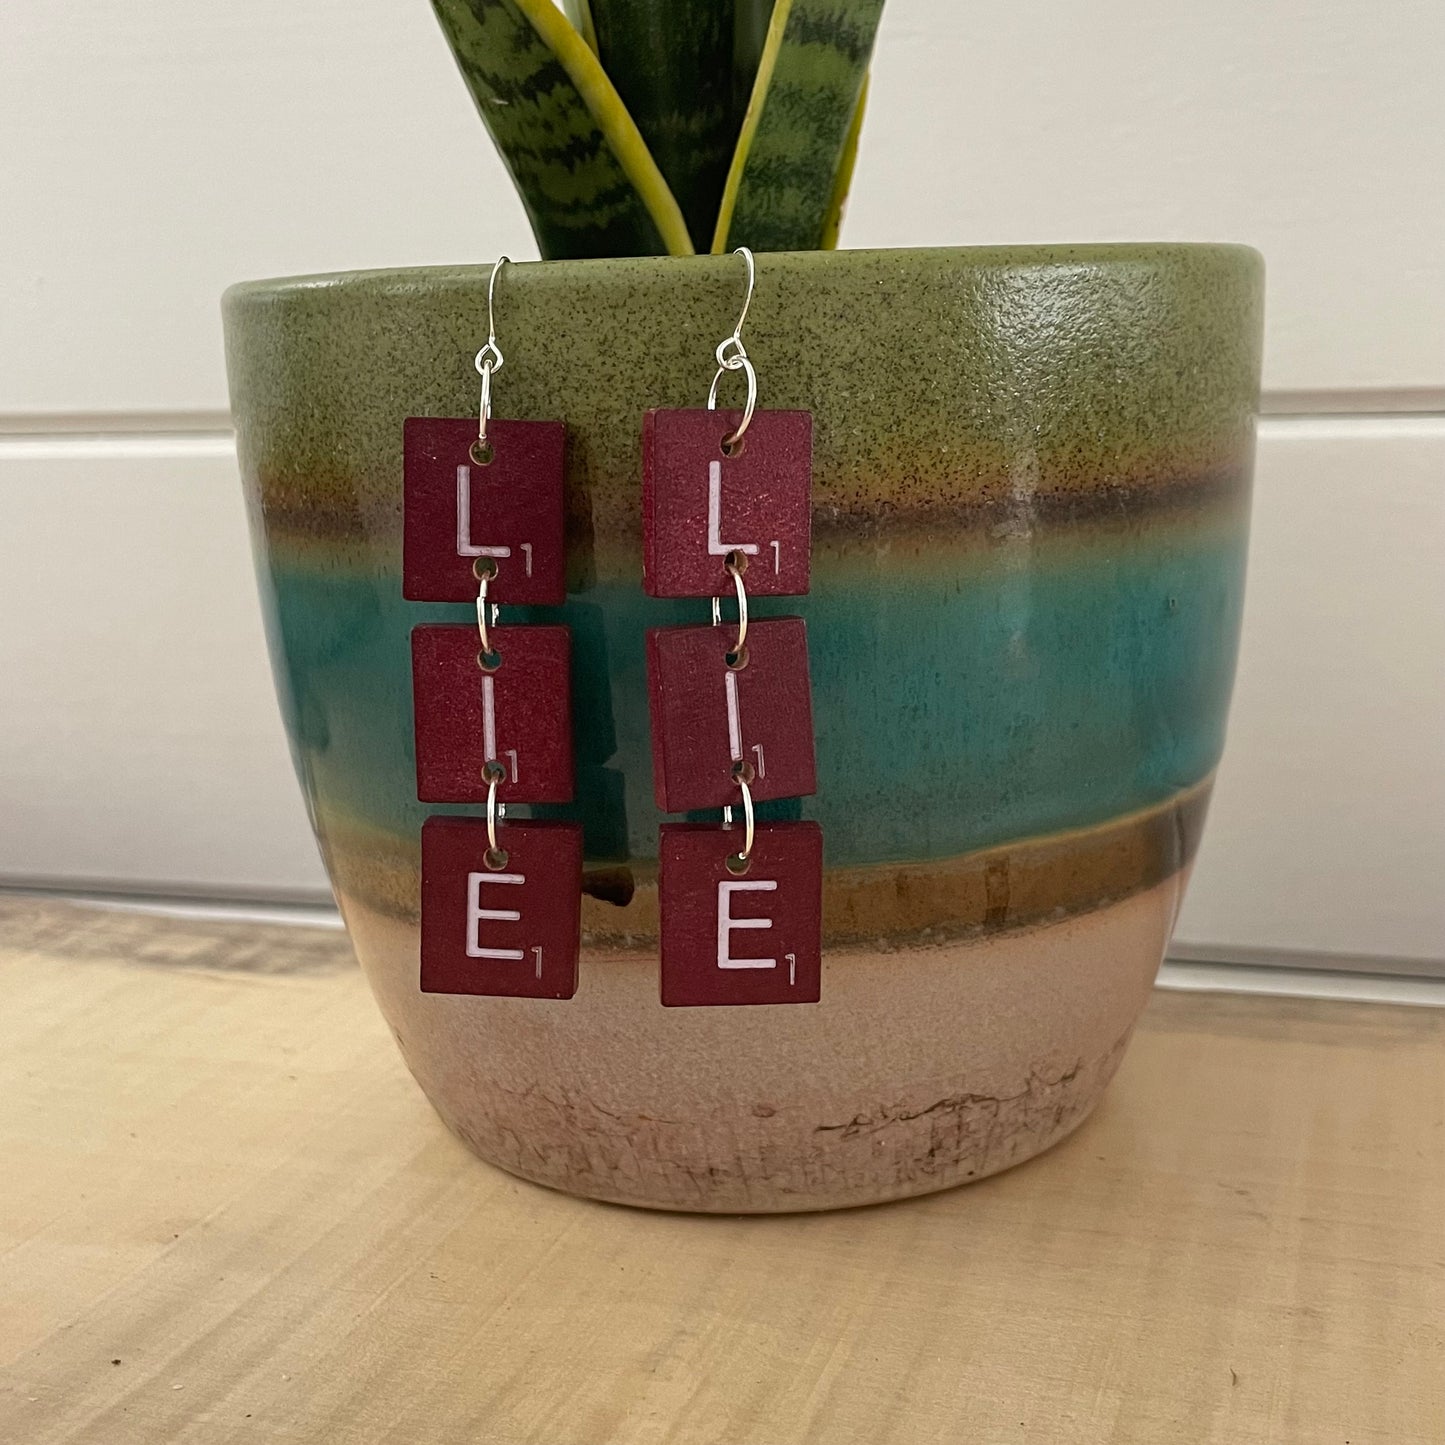 LIE Statement Dangle Earrings 3.25" Scrabble Tile Maroon Red Wood Repurposed Upcycled Fun Game OOAK